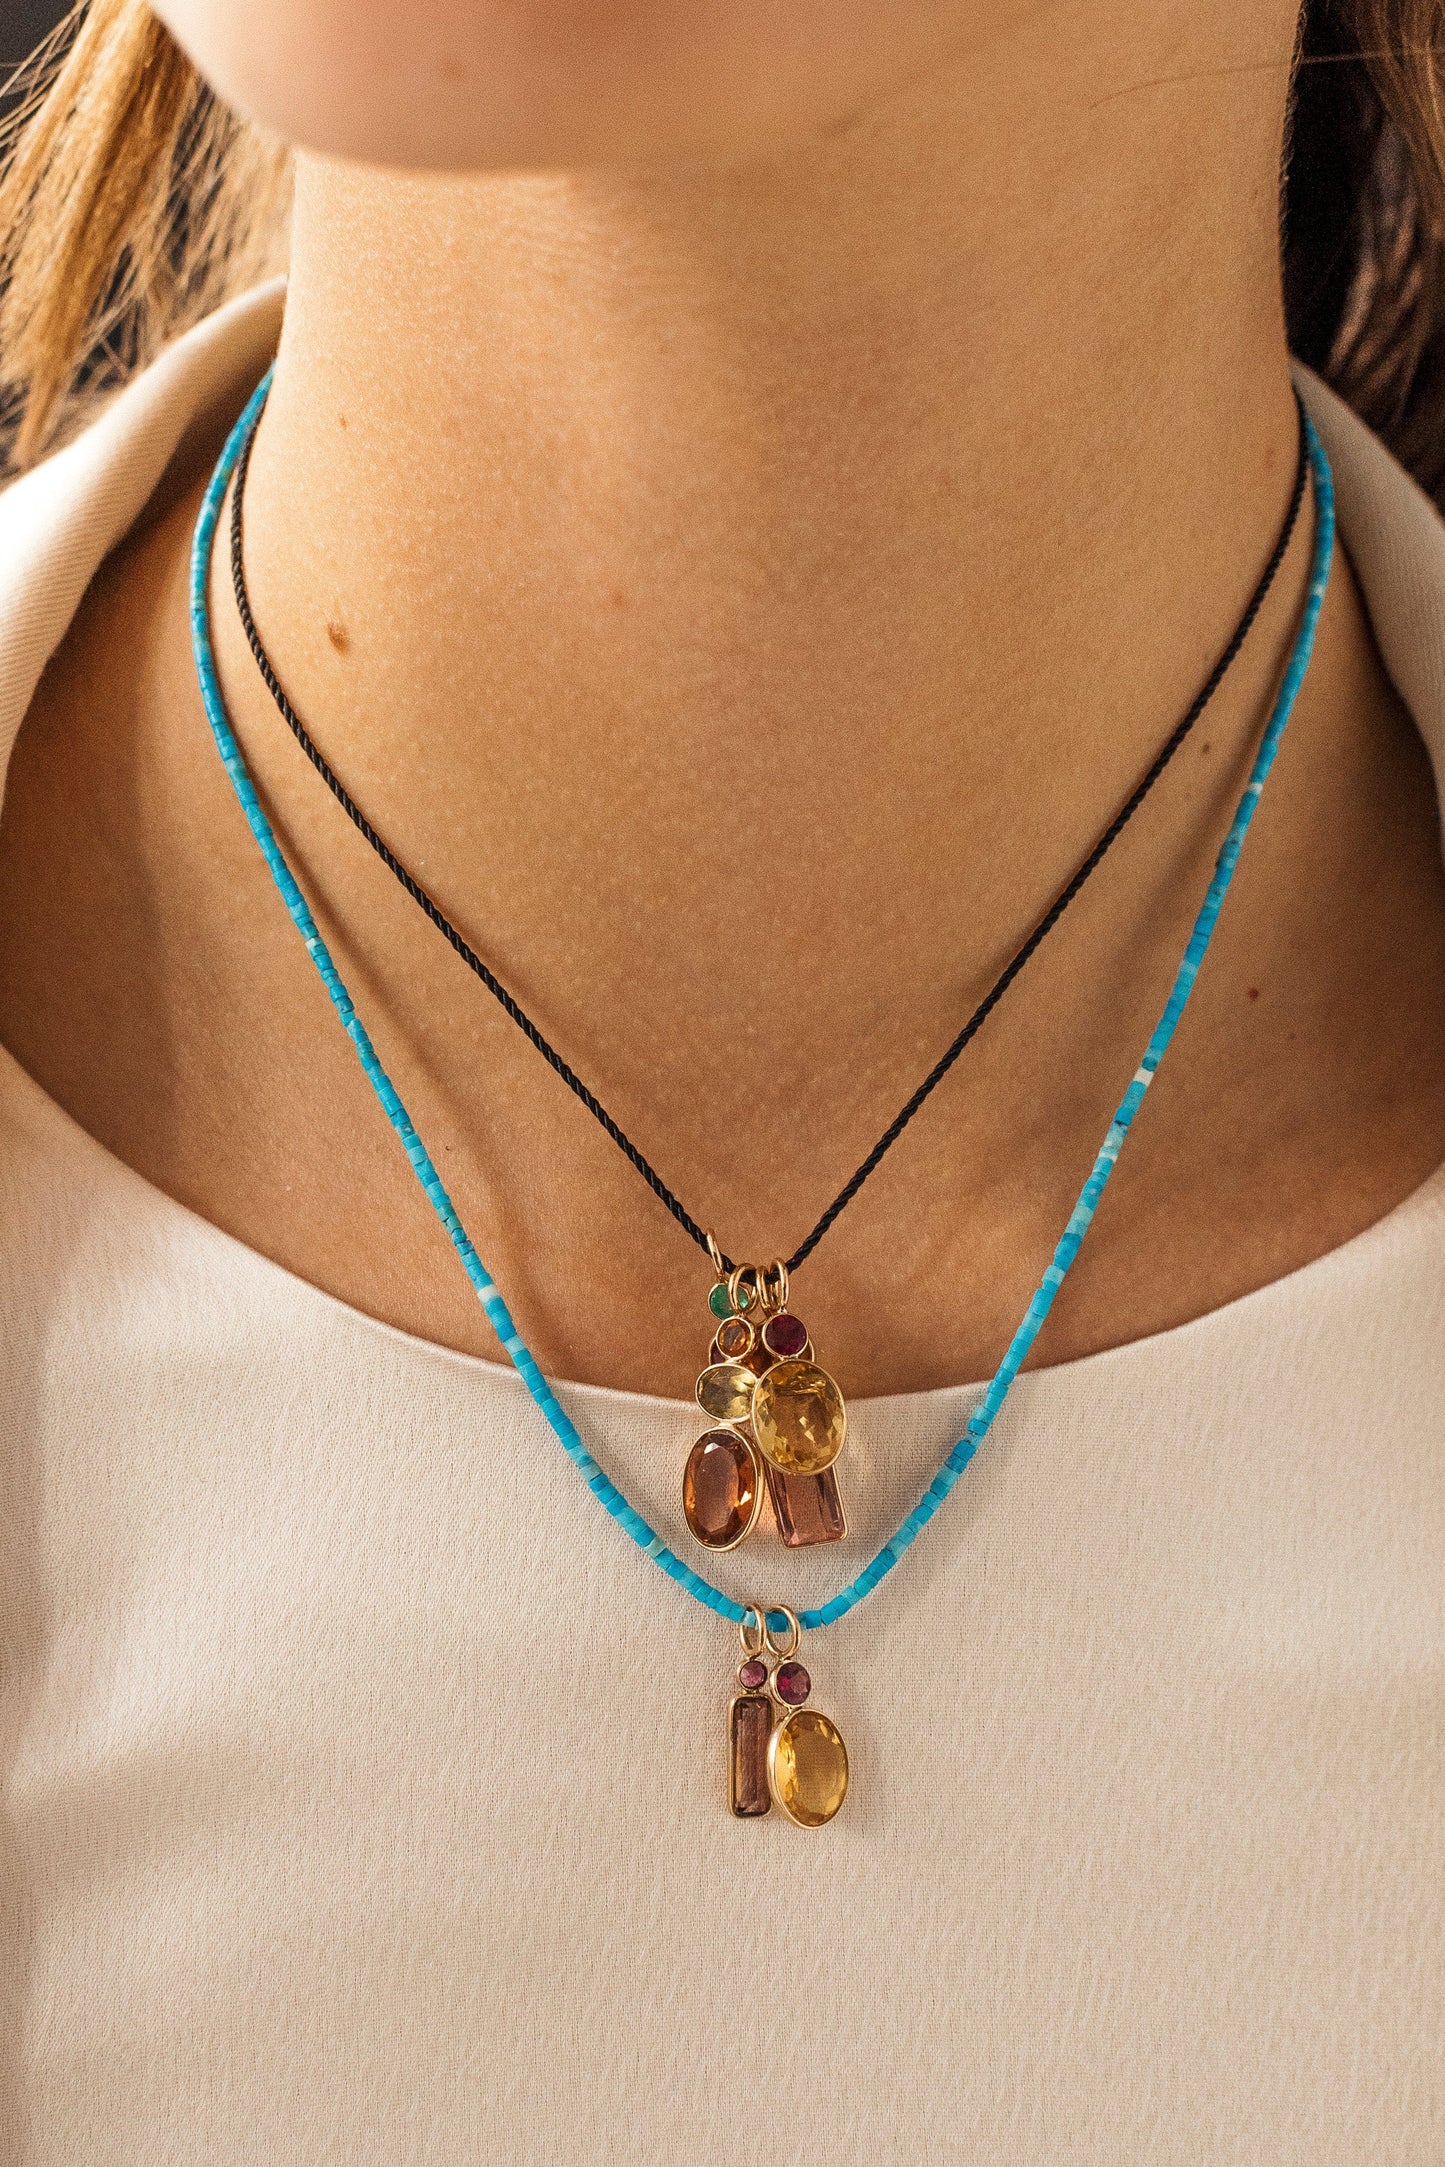 Tiny Turquoise Bead Necklace - 16" JEWELRYFINE JEWELNECKLACE O LIZZIE FORTUNATO   